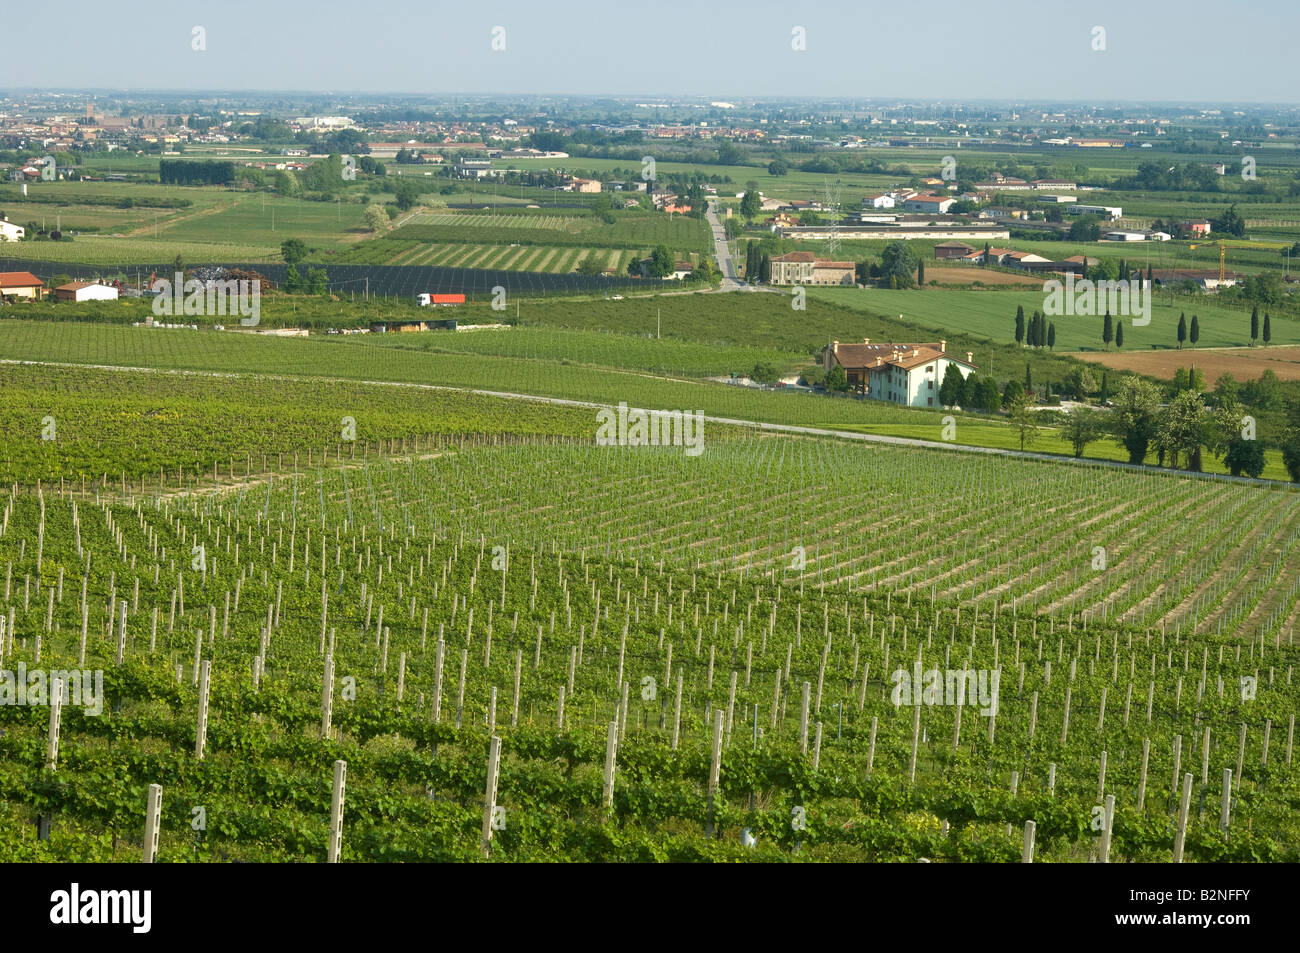 vineyards, custoza, italy Stock Photo